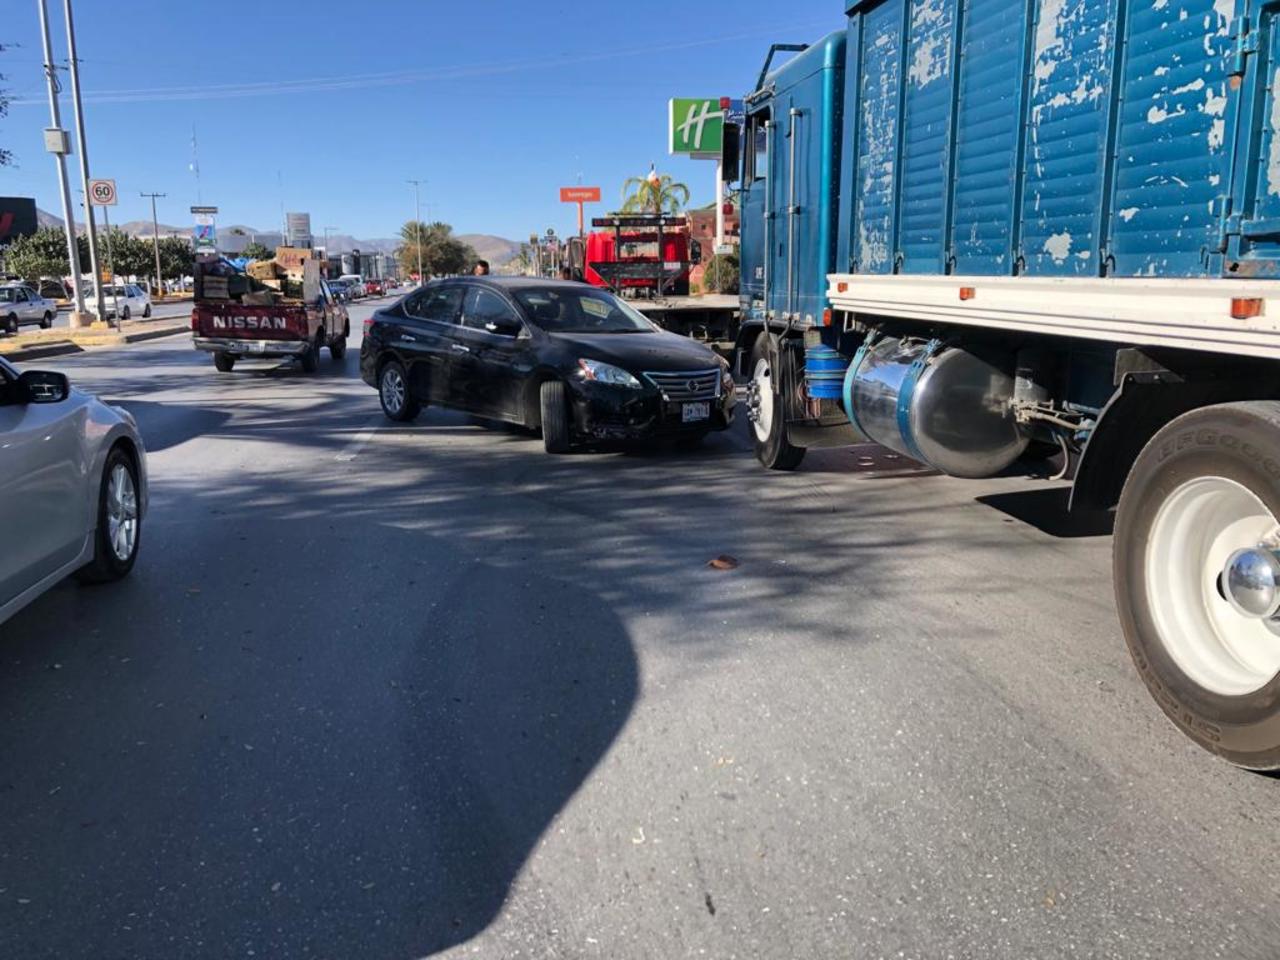 Al intentar cambiar de carril la conductora se atravesó al paso del camión, causando un choque que dejó daños por $ 15 mil.